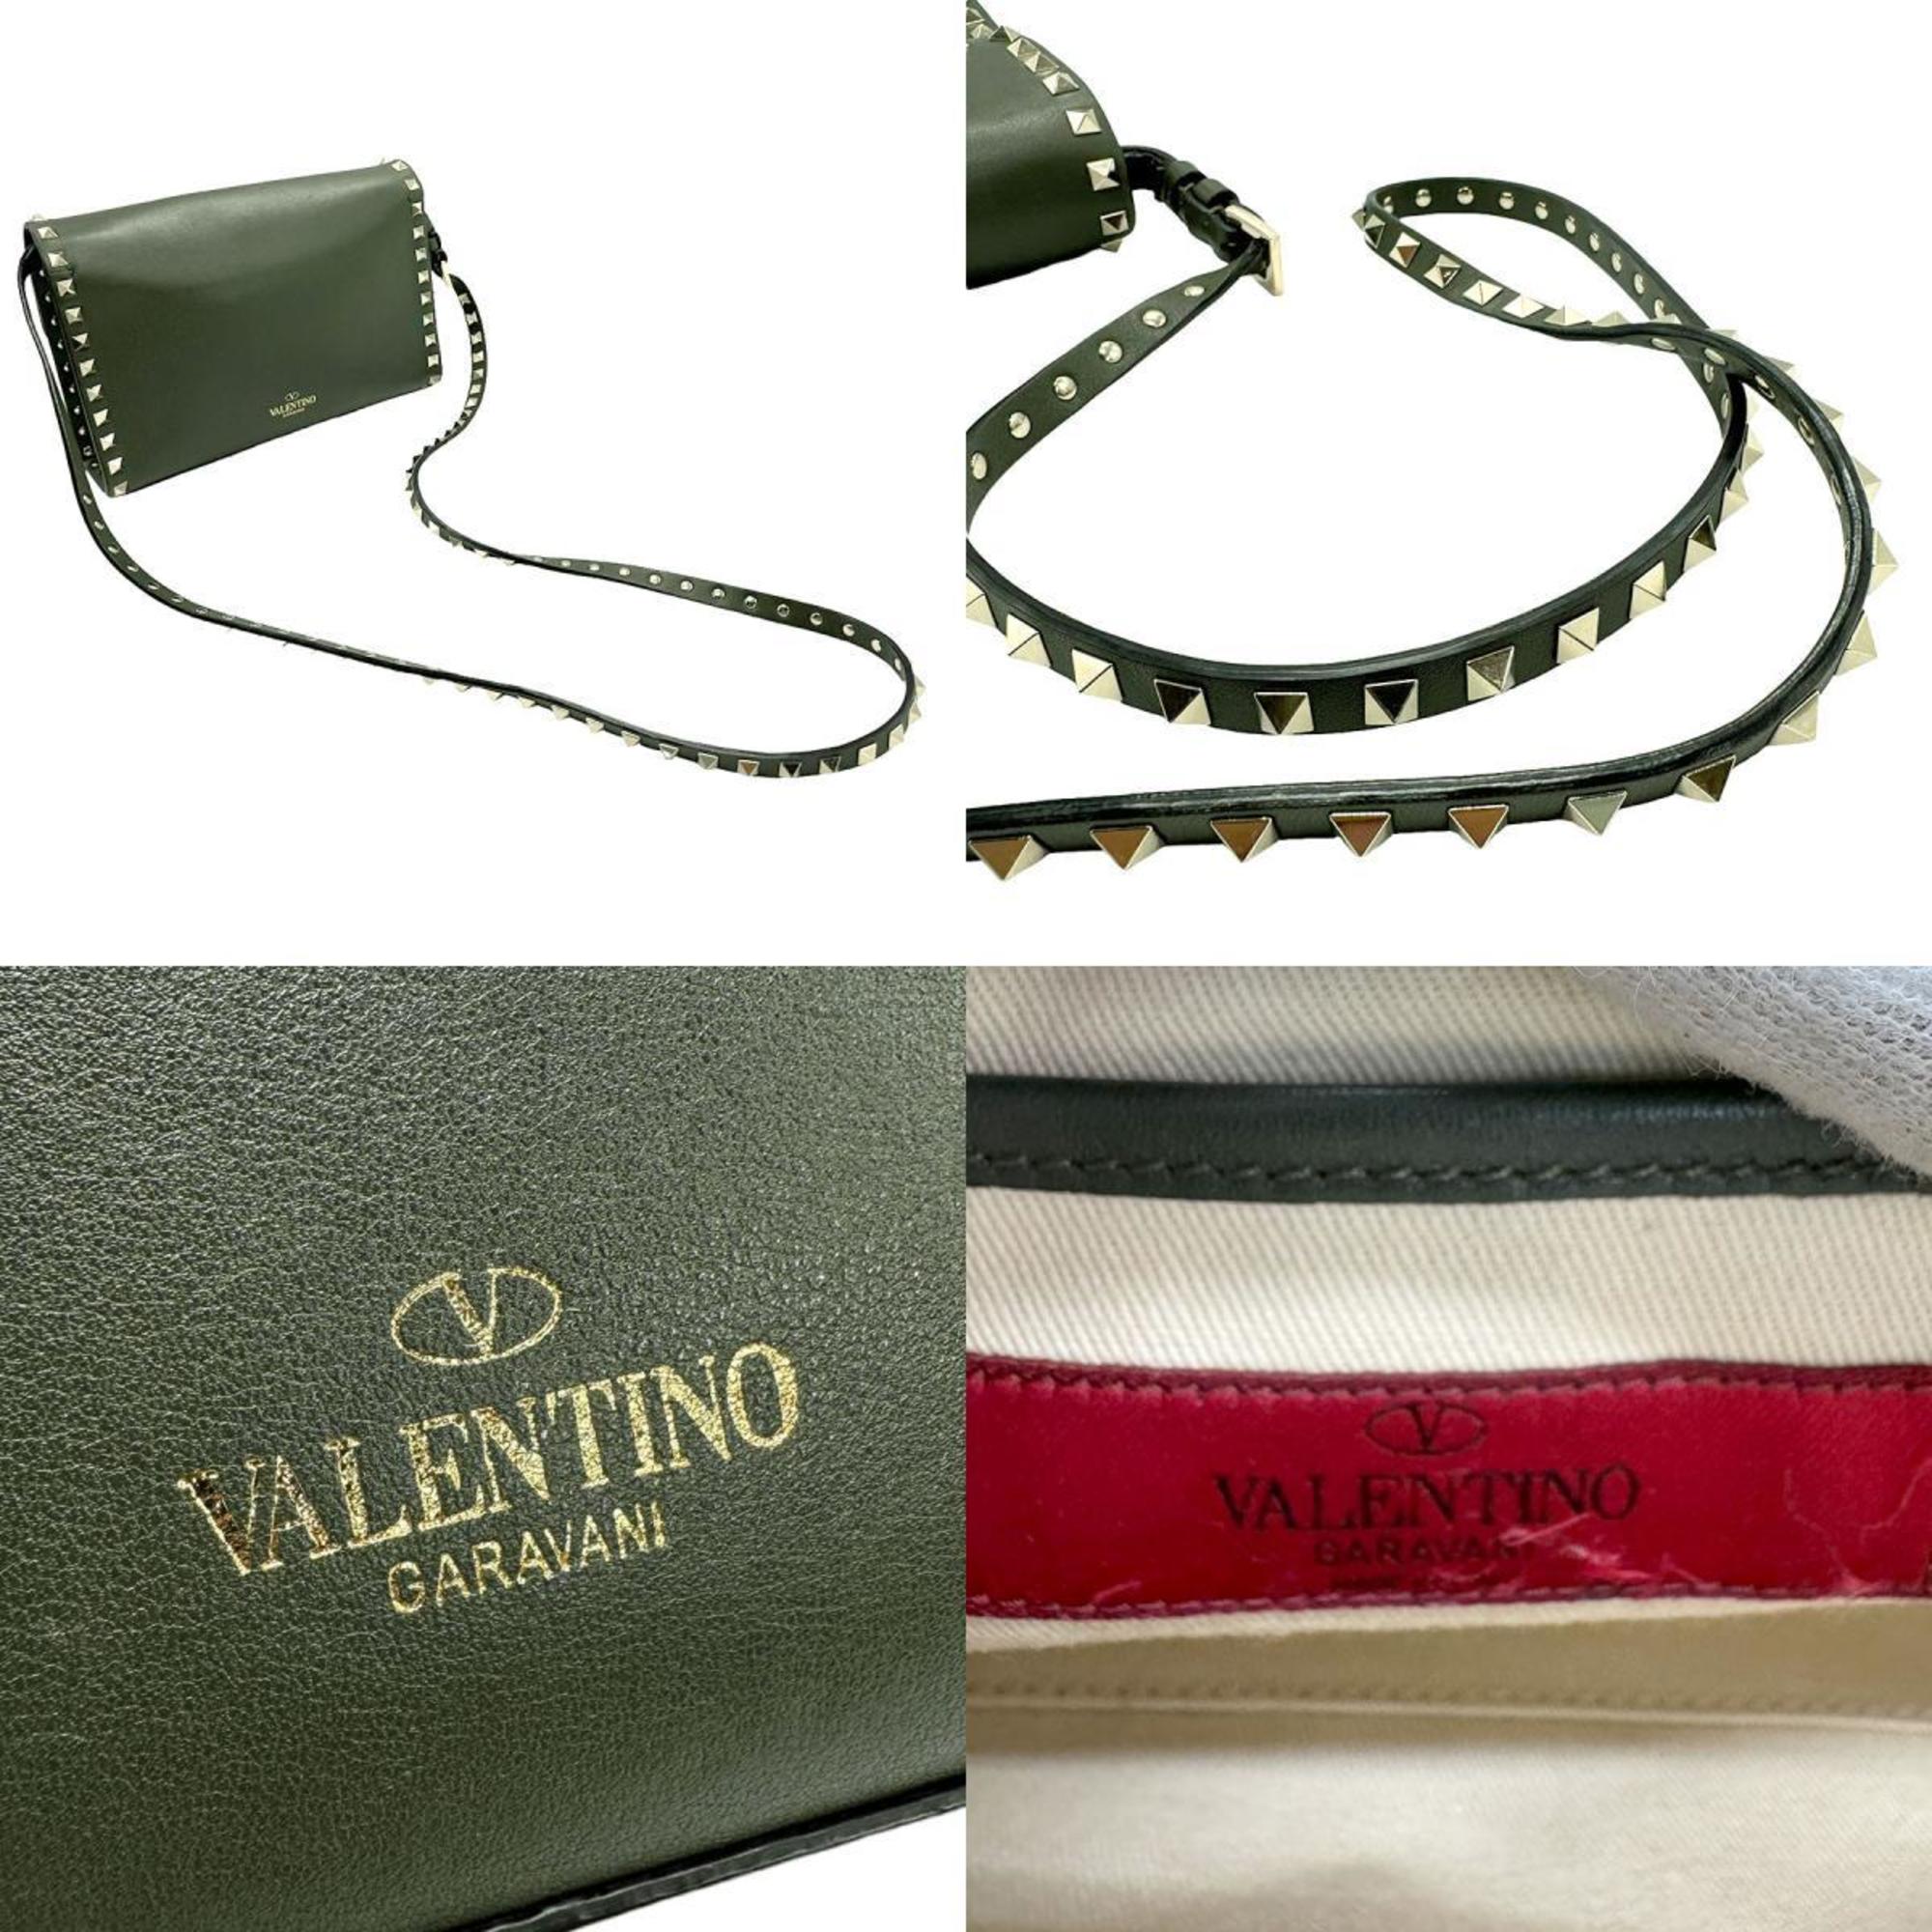 Valentino Garavani shoulder bag rockstud leather metal khaki light gold z1420